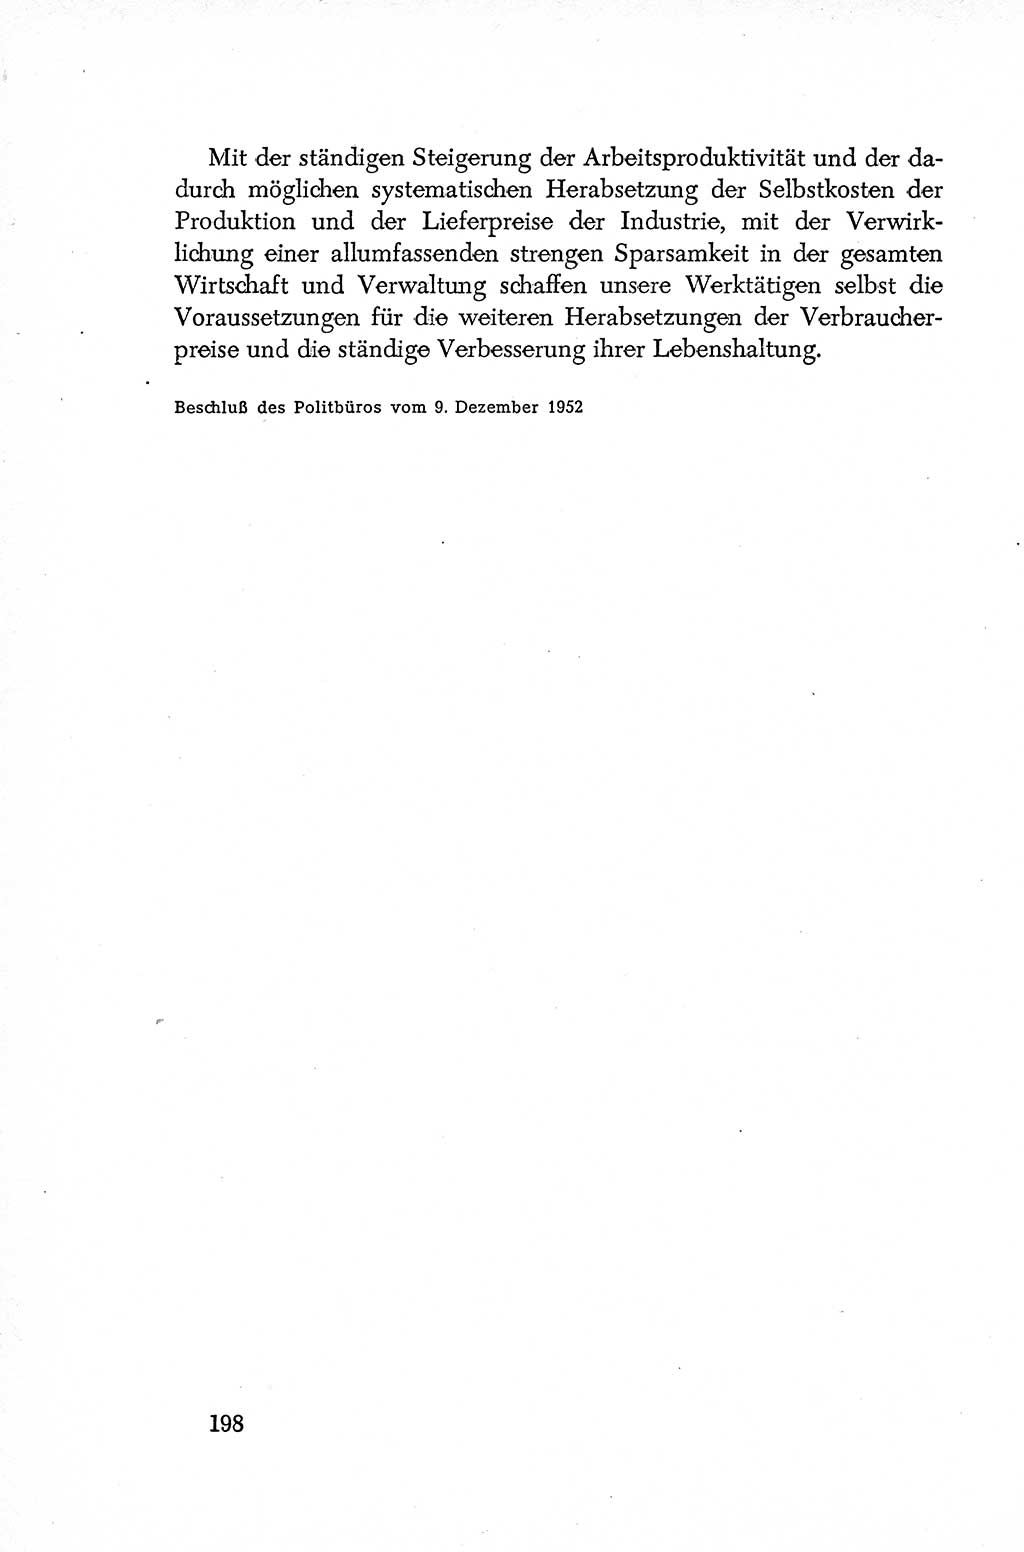 Dokumente der Sozialistischen Einheitspartei Deutschlands (SED) [Deutsche Demokratische Republik (DDR)] 1952-1953, Seite 198 (Dok. SED DDR 1952-1953, S. 198)